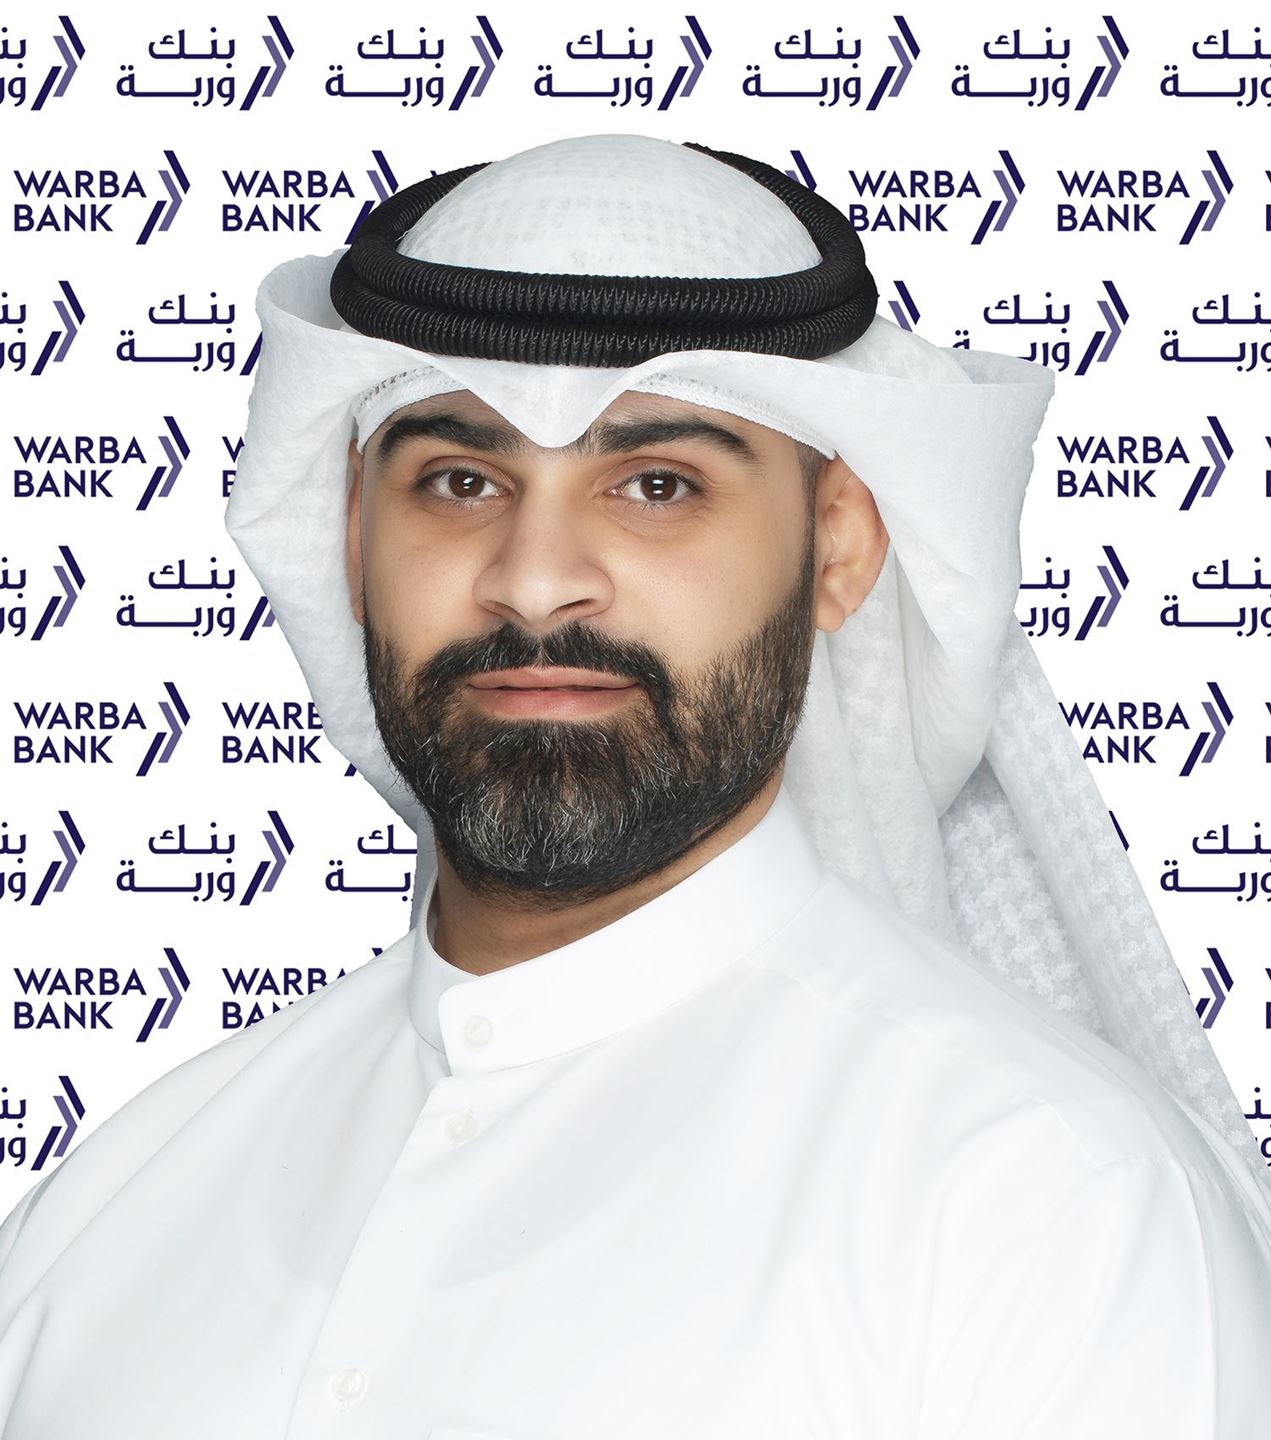 السيد محمد جاسم الخضر - مدير أول مبيعات السيارات في بنك وربة